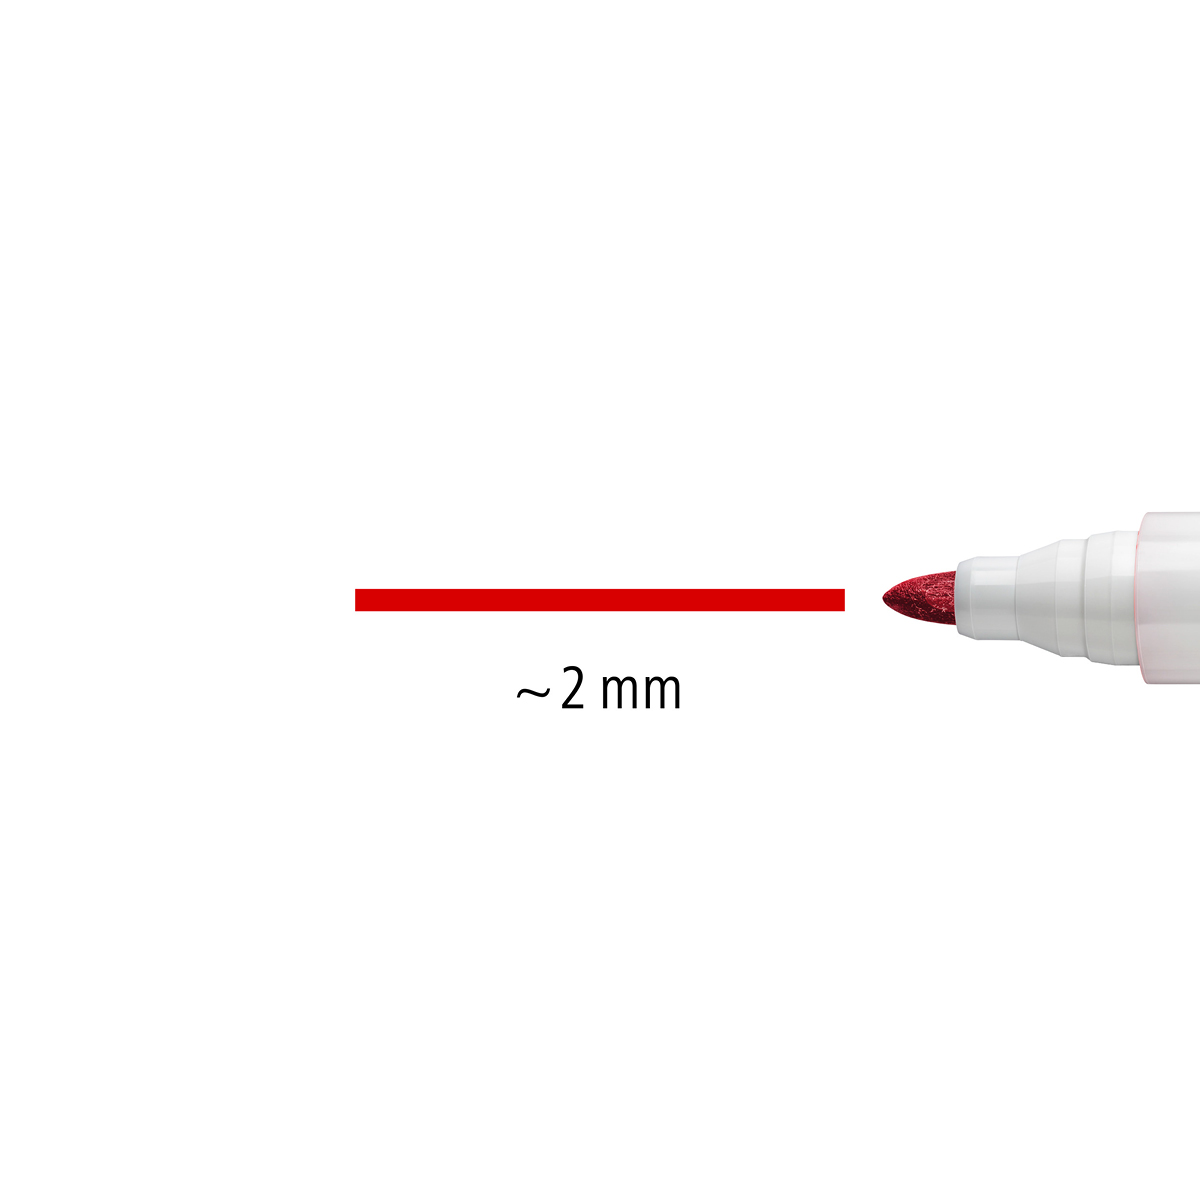 Staedtler Lumocolor 301 Whiteboard Dry Erase Pens Set of 4 Colors - Du-All  Art & Drafting Supply